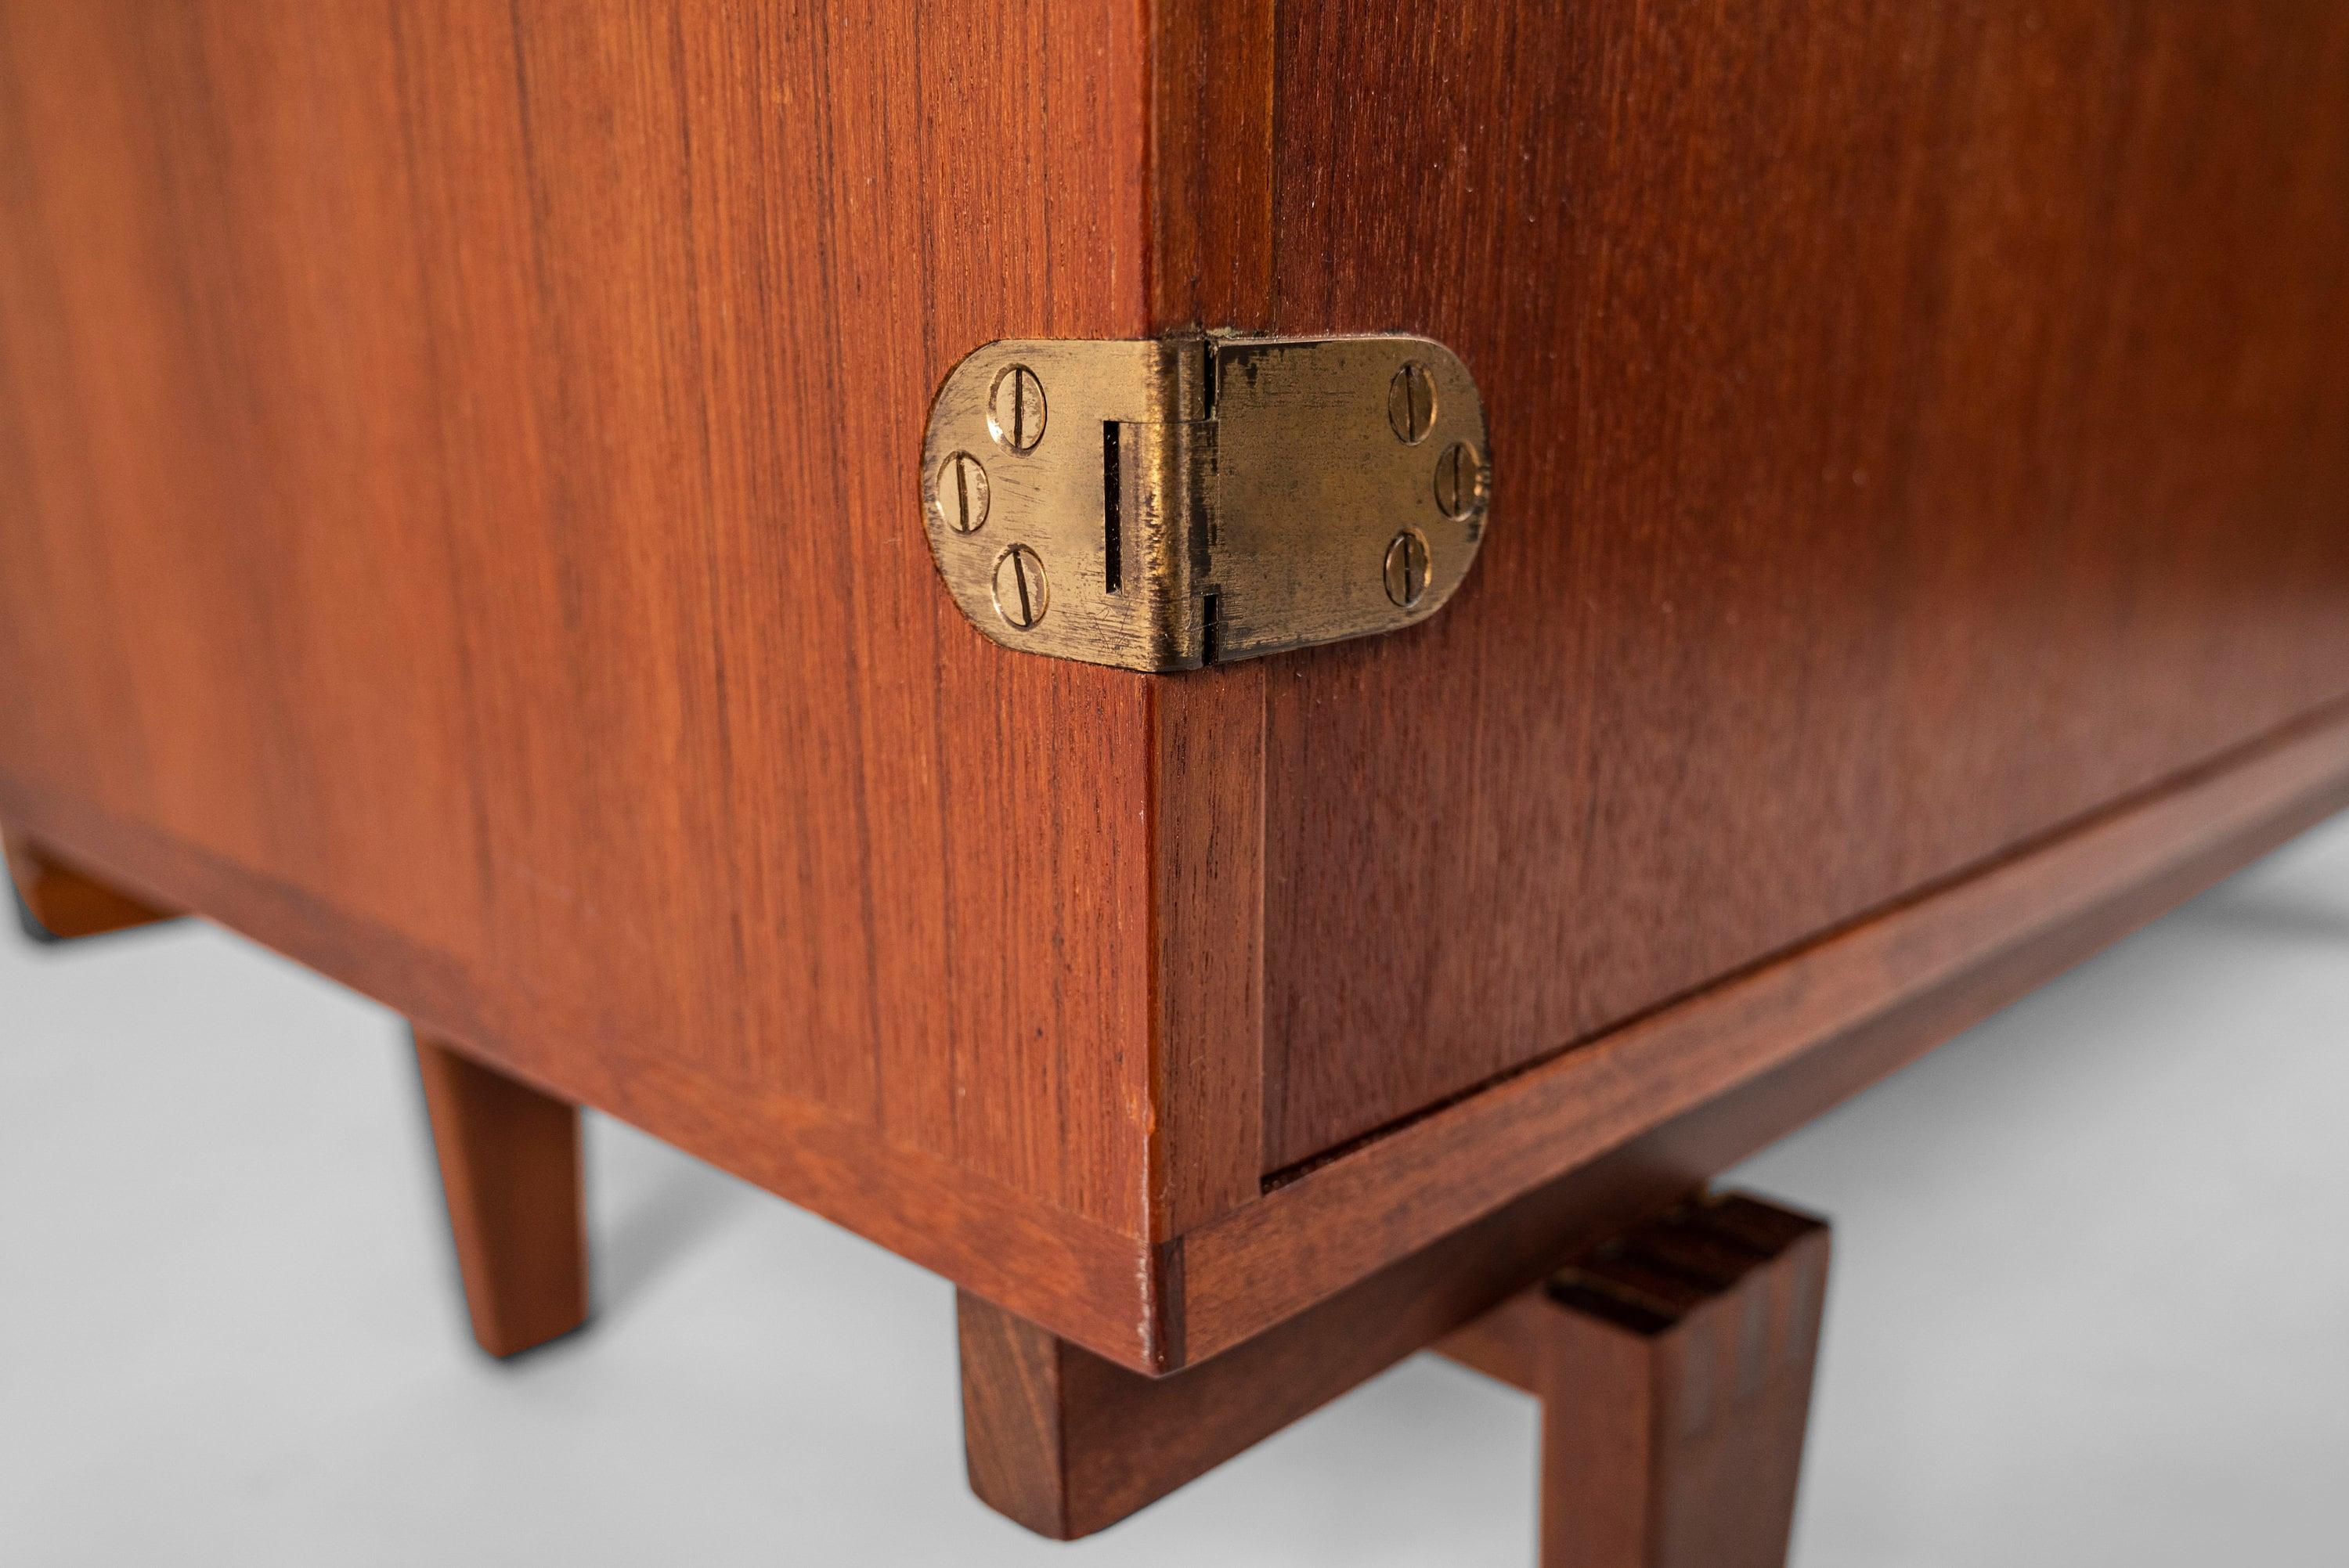 Cabinet One- Ein begehrtes und außergewöhnlich gut gebautes Design von Peter Lovig Nielsen für Dansk Designs. Die zweiteilige Vitrine ist aus Teakholz gefertigt. Der obere Teil des Bücherregals verfügt über neun verstellbare Einlegeböden, die